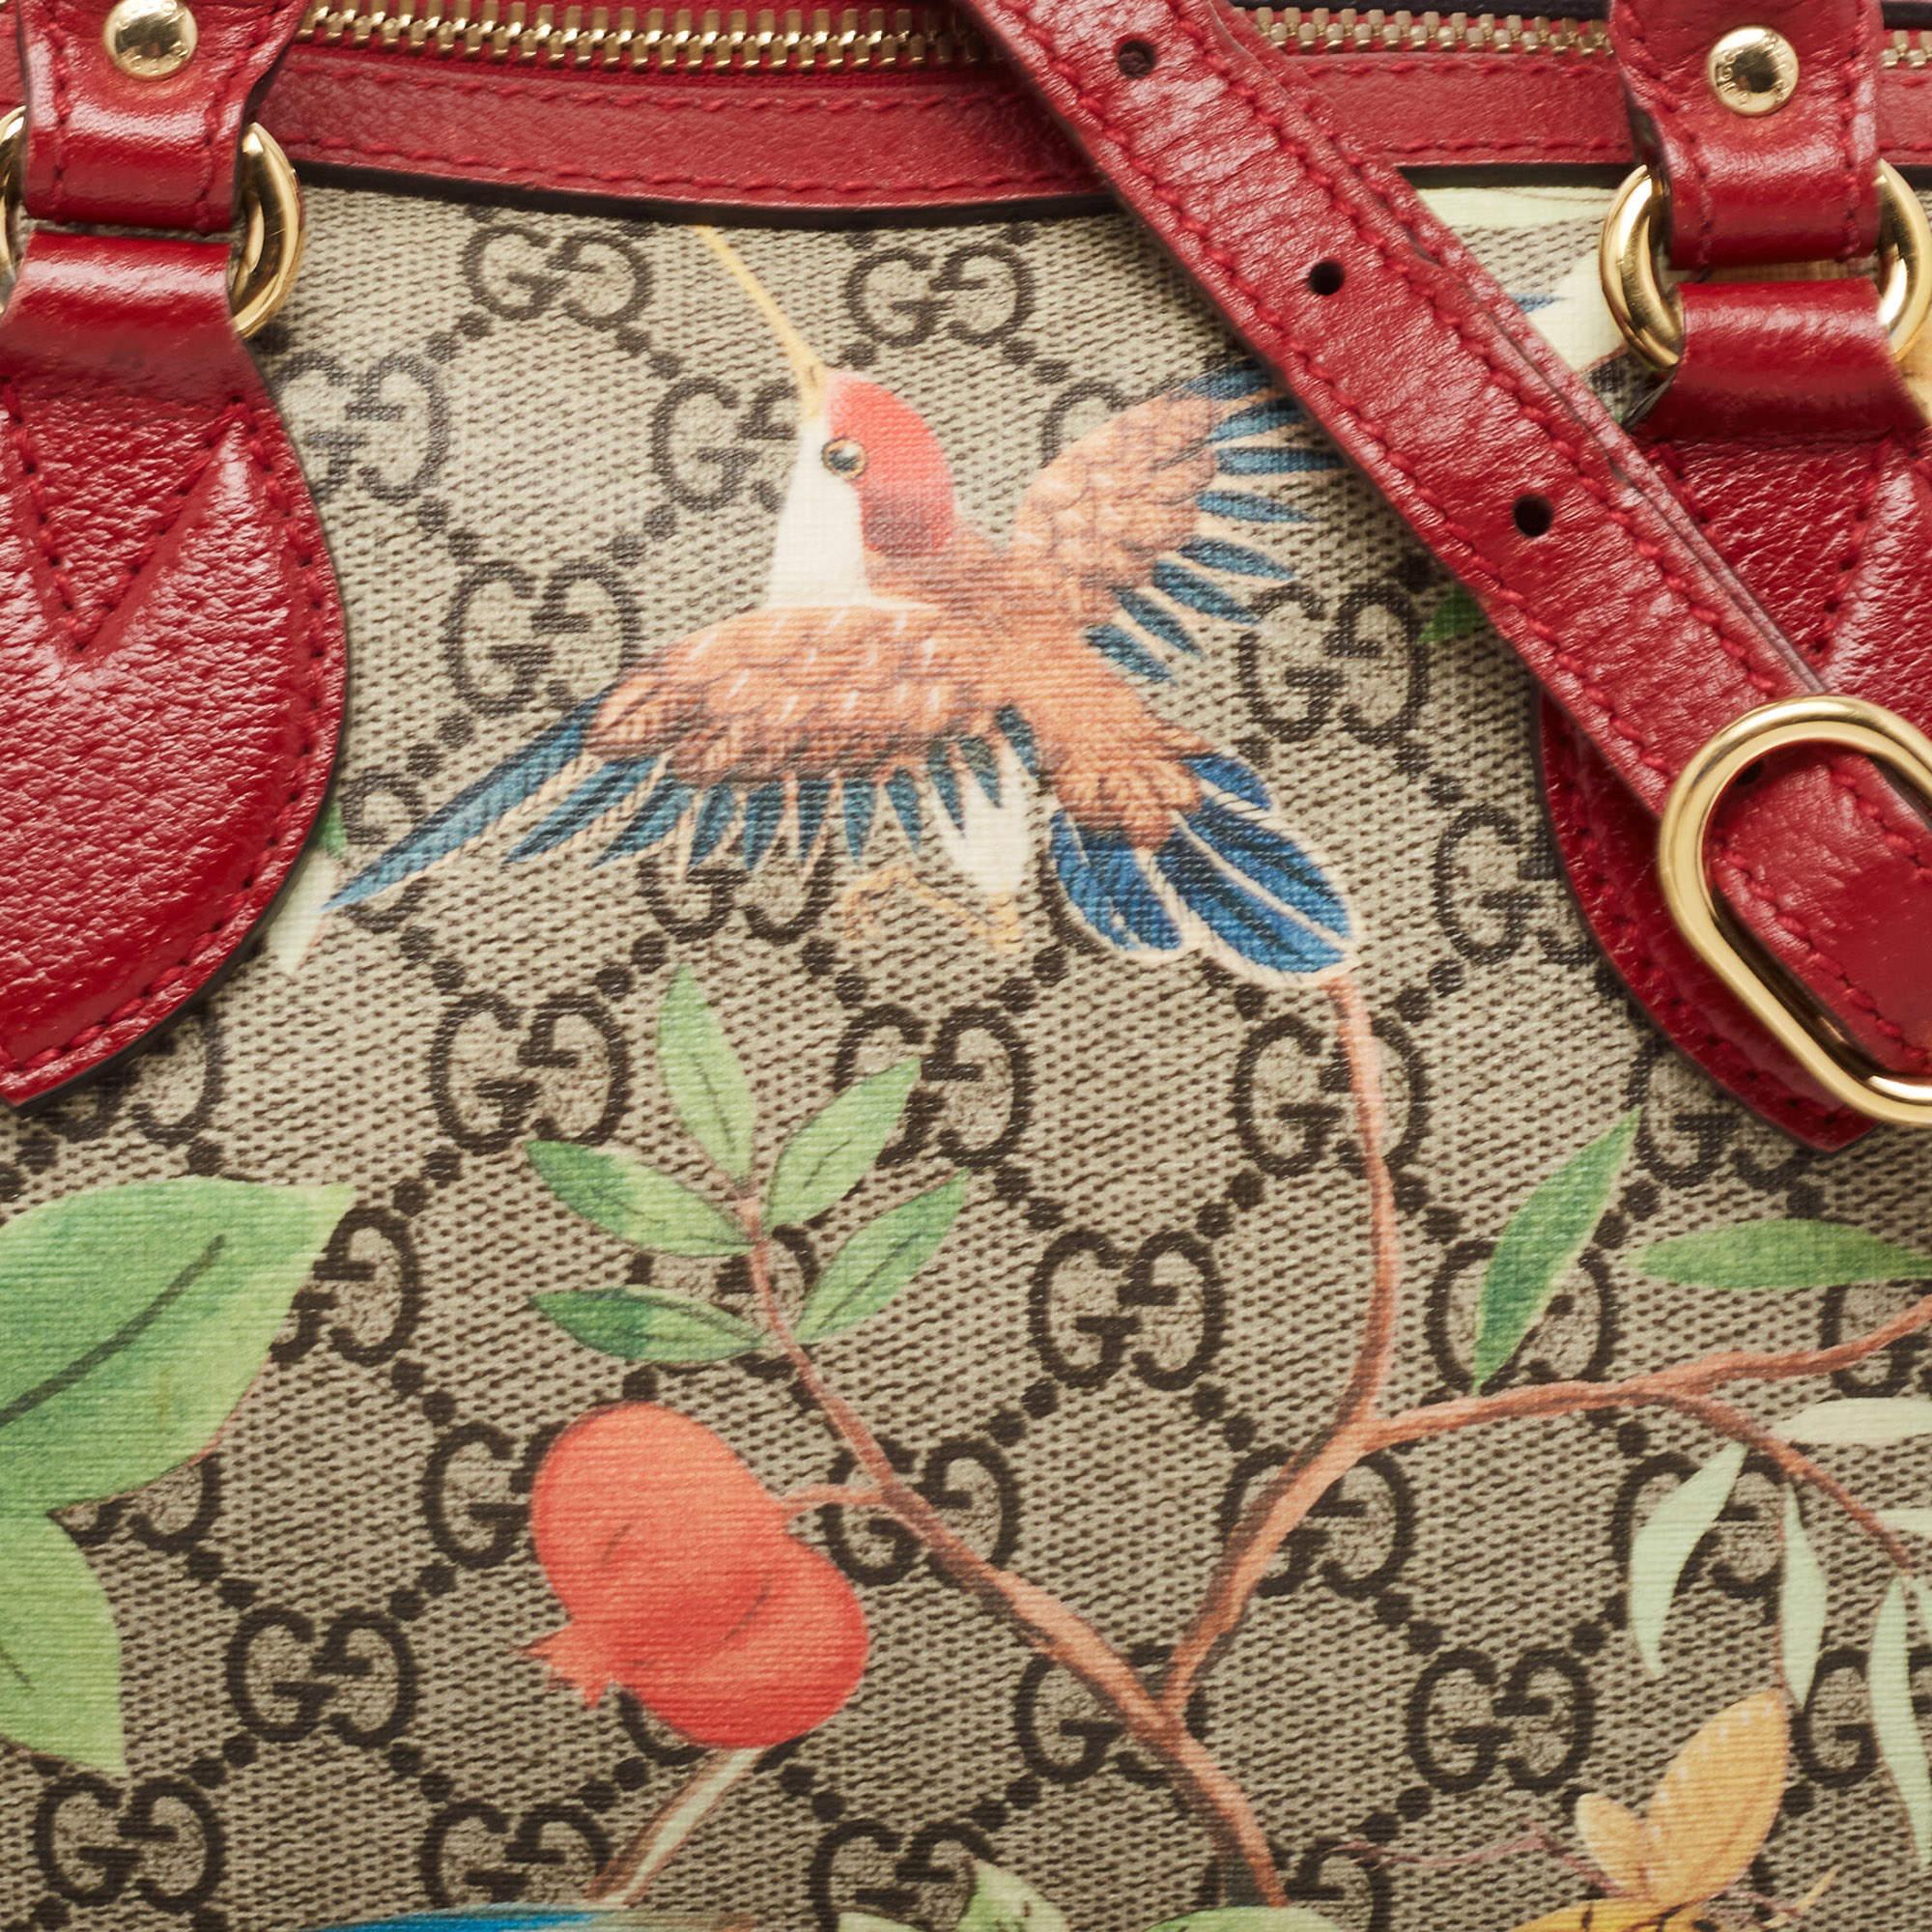 Gucci Multicolor GG Supreme Canvas and Leather Small Tian Boston Bag 9